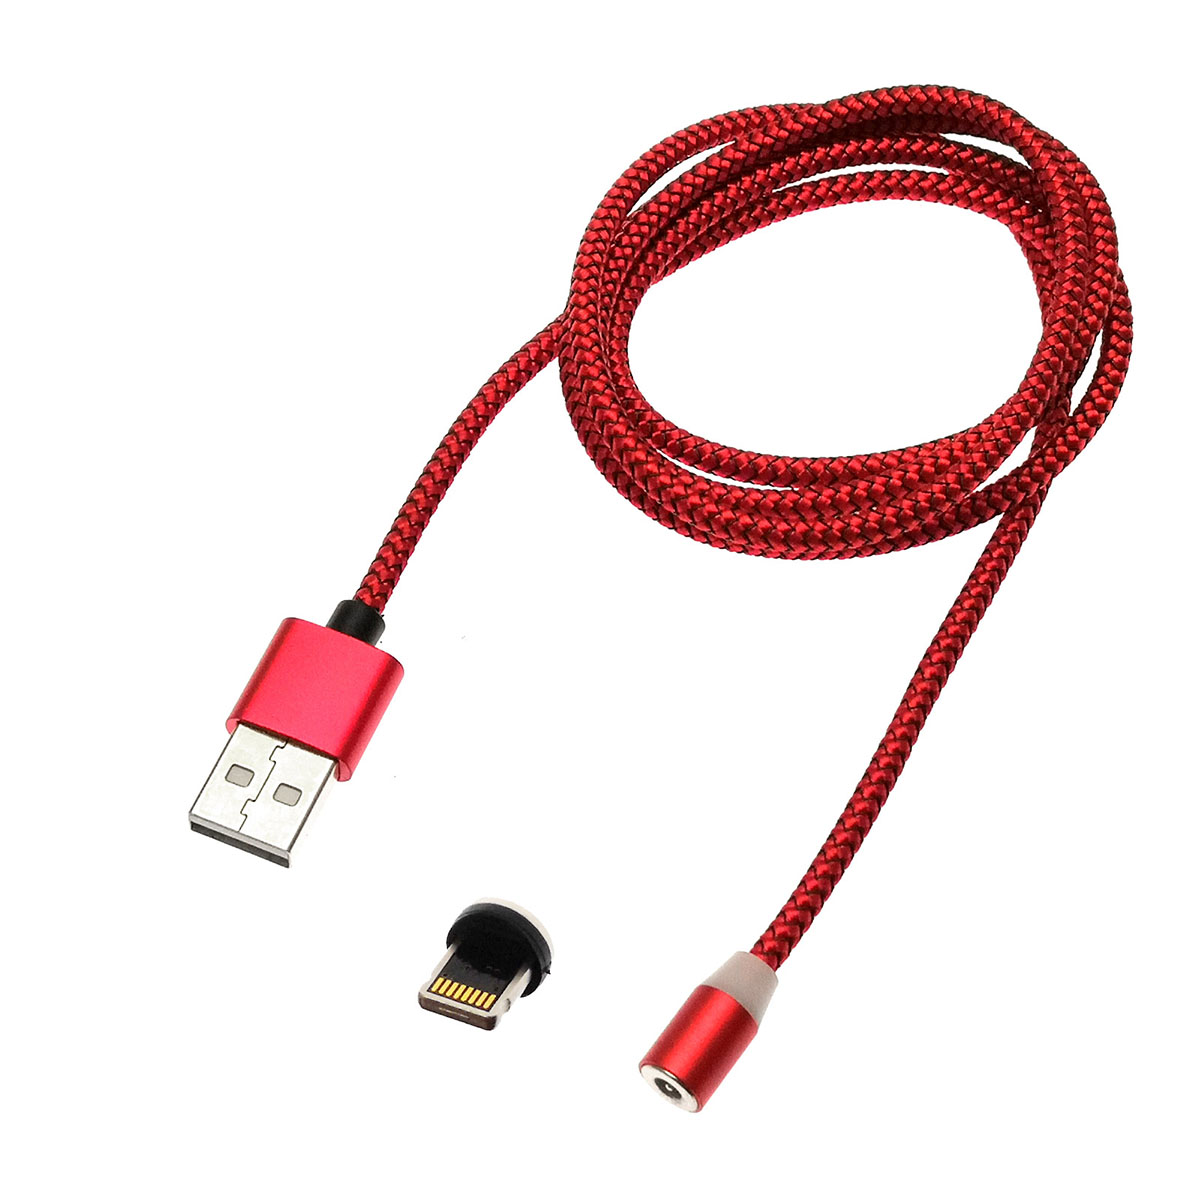 USB кабель магнитный 360 "Magnetic Cable" APPLE Lightning USB, длина 1 метр, тканевая оплетка, цвет красный.